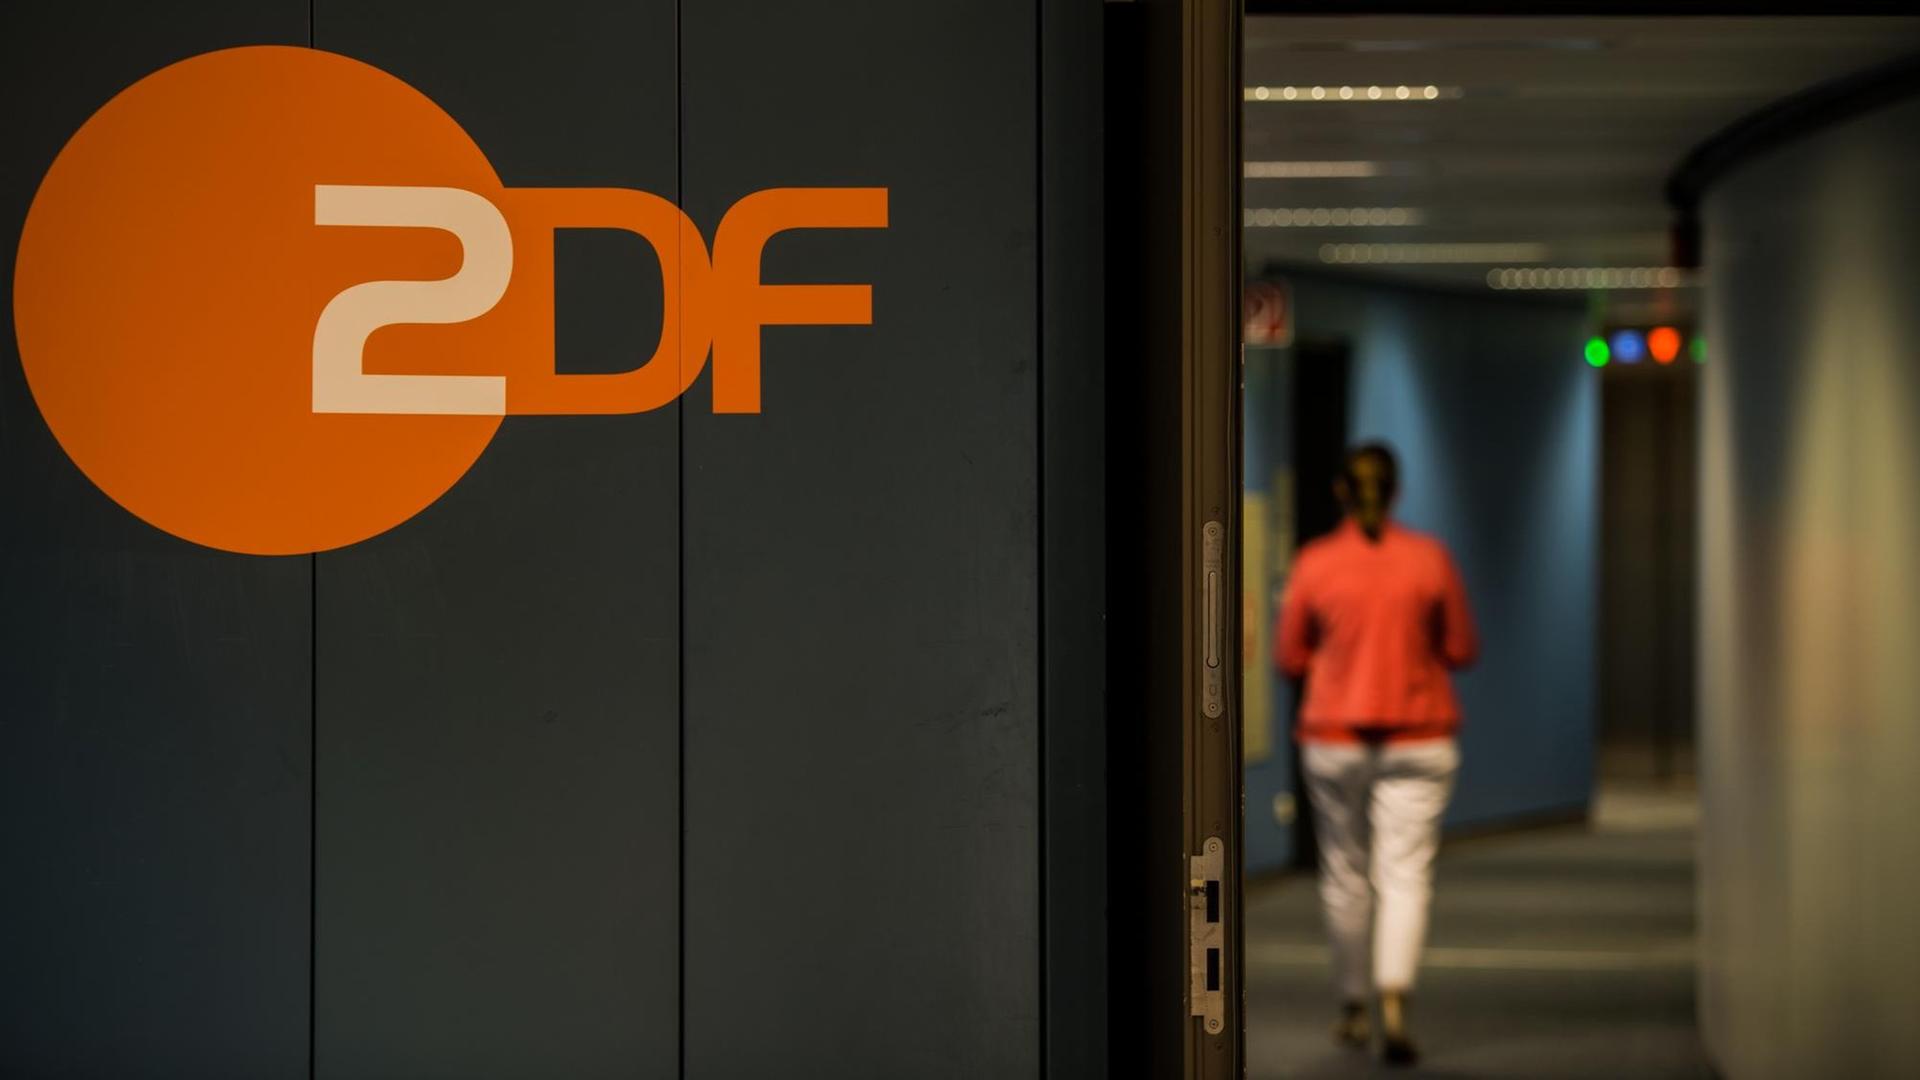 Eine Frau, die von hinten zu sehen ist, läuft durch einen Flur. An einer Wand prangt das orangefarbene Logo des ZDF.